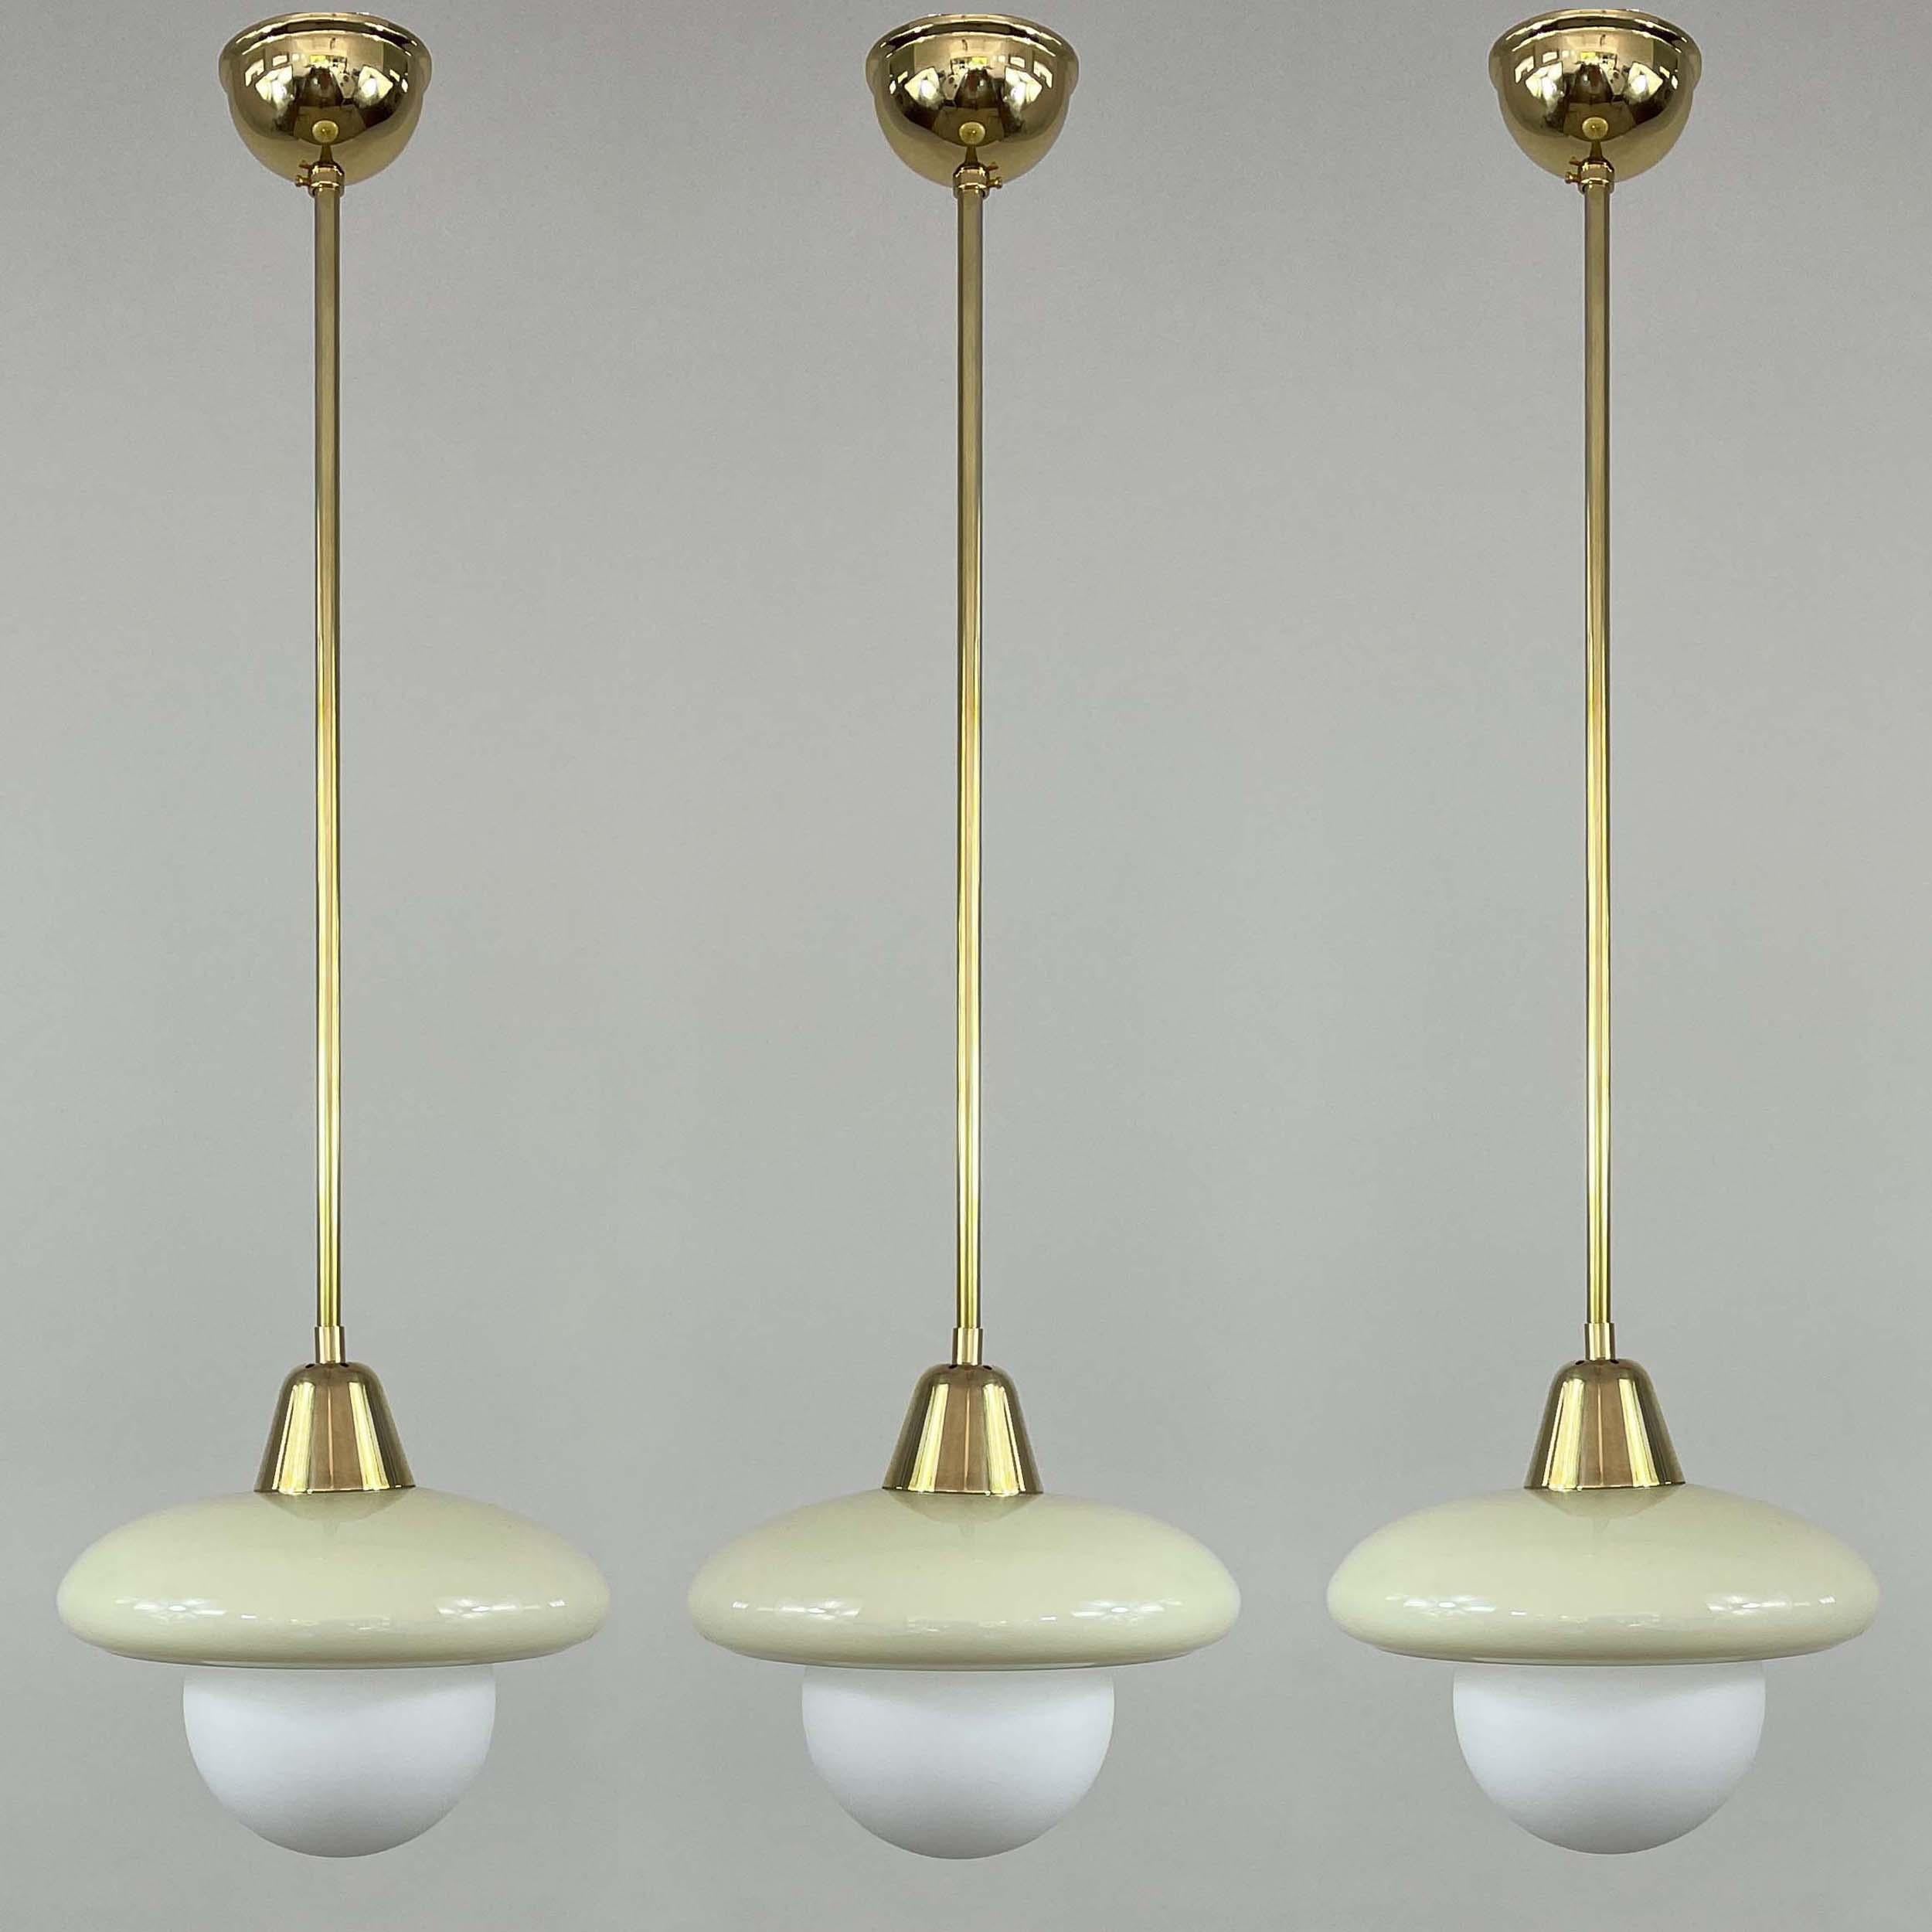 Cette élégante suspension minimaliste de style Art déco a été conçue et fabriquée en Allemagne dans les années 1920-1930, à l'époque du Bauhaus. 

La lampe est dotée d'un abat-jour rond en opaline de couleur crème et d'une quincaillerie en laiton.